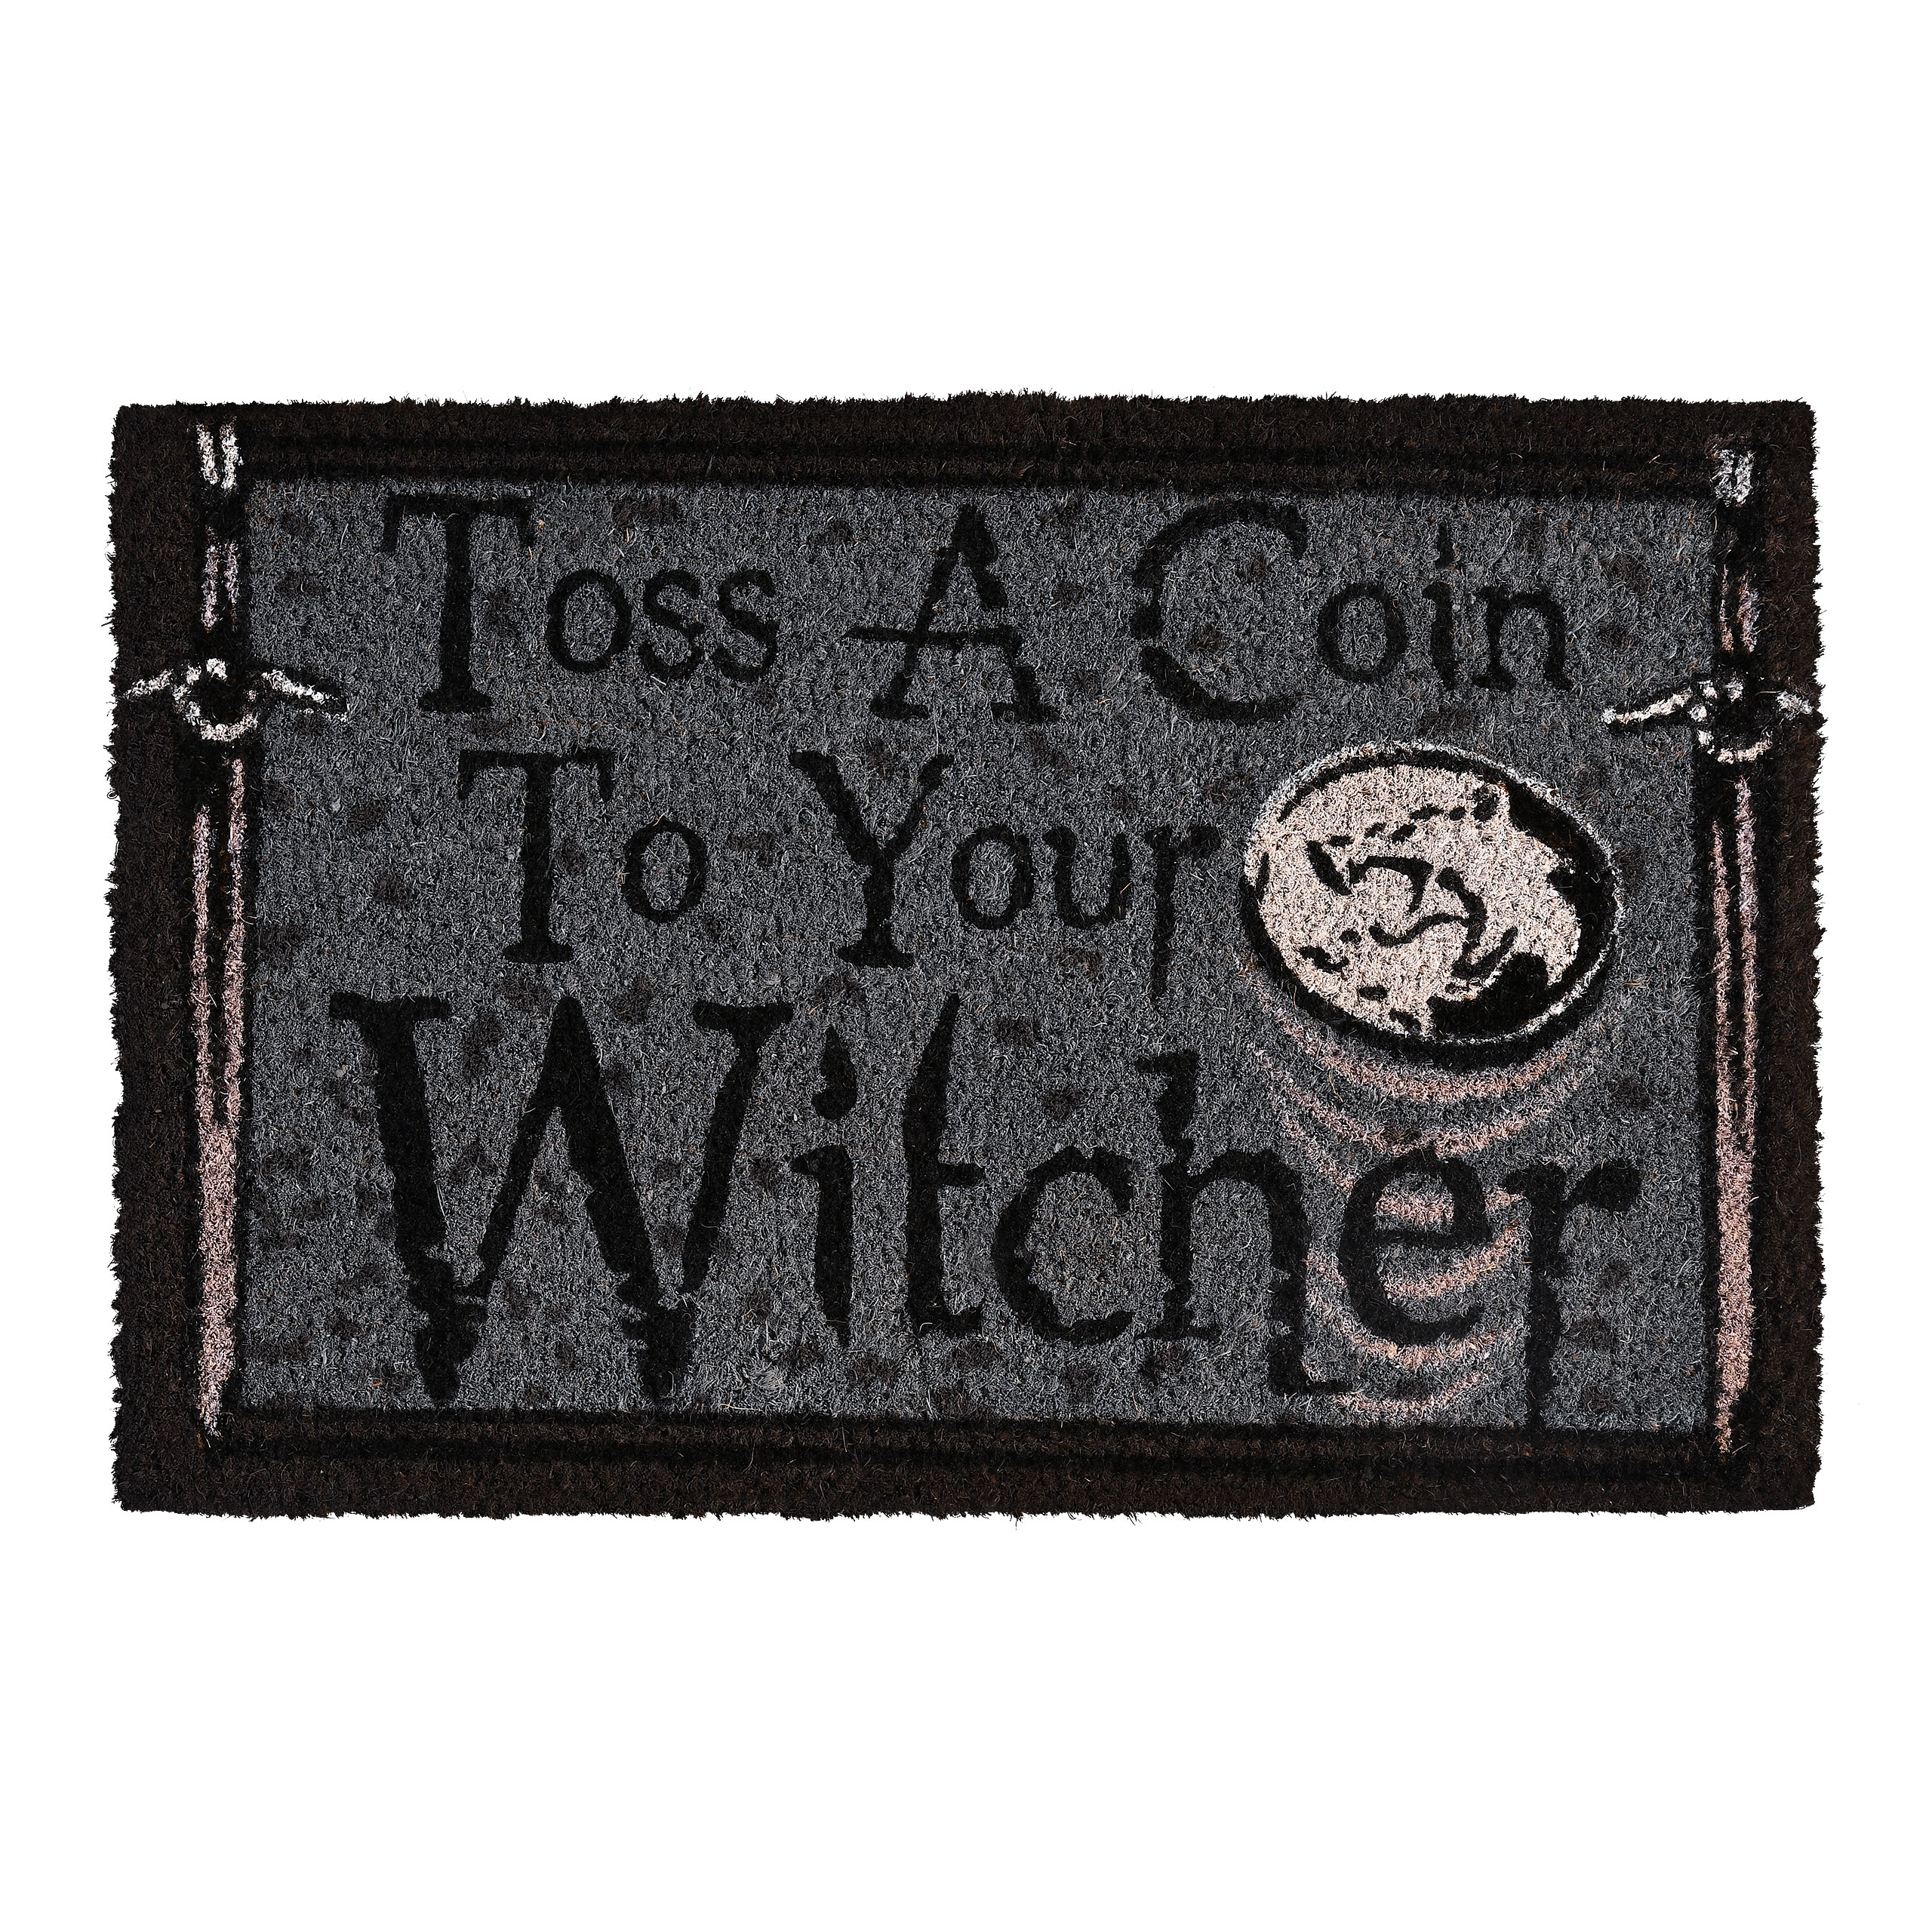 Witcher - Toss a Coin Doormat